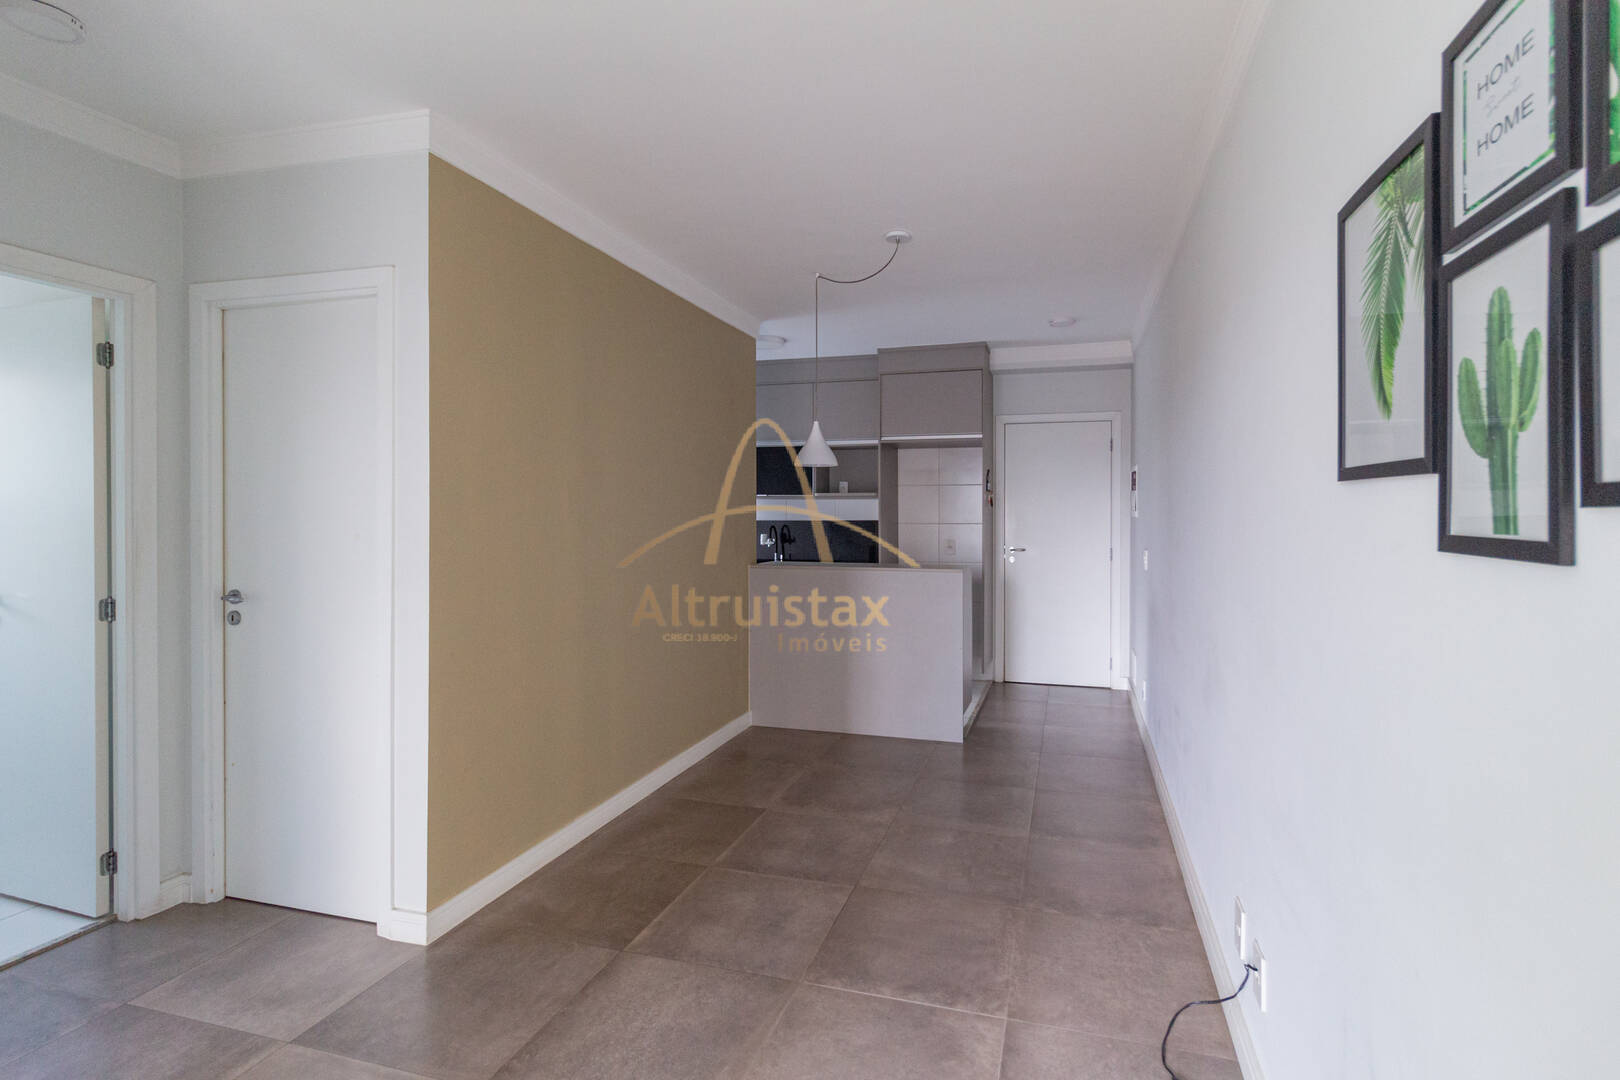 Apartamento, 2 quartos, 54 m² - Foto 1